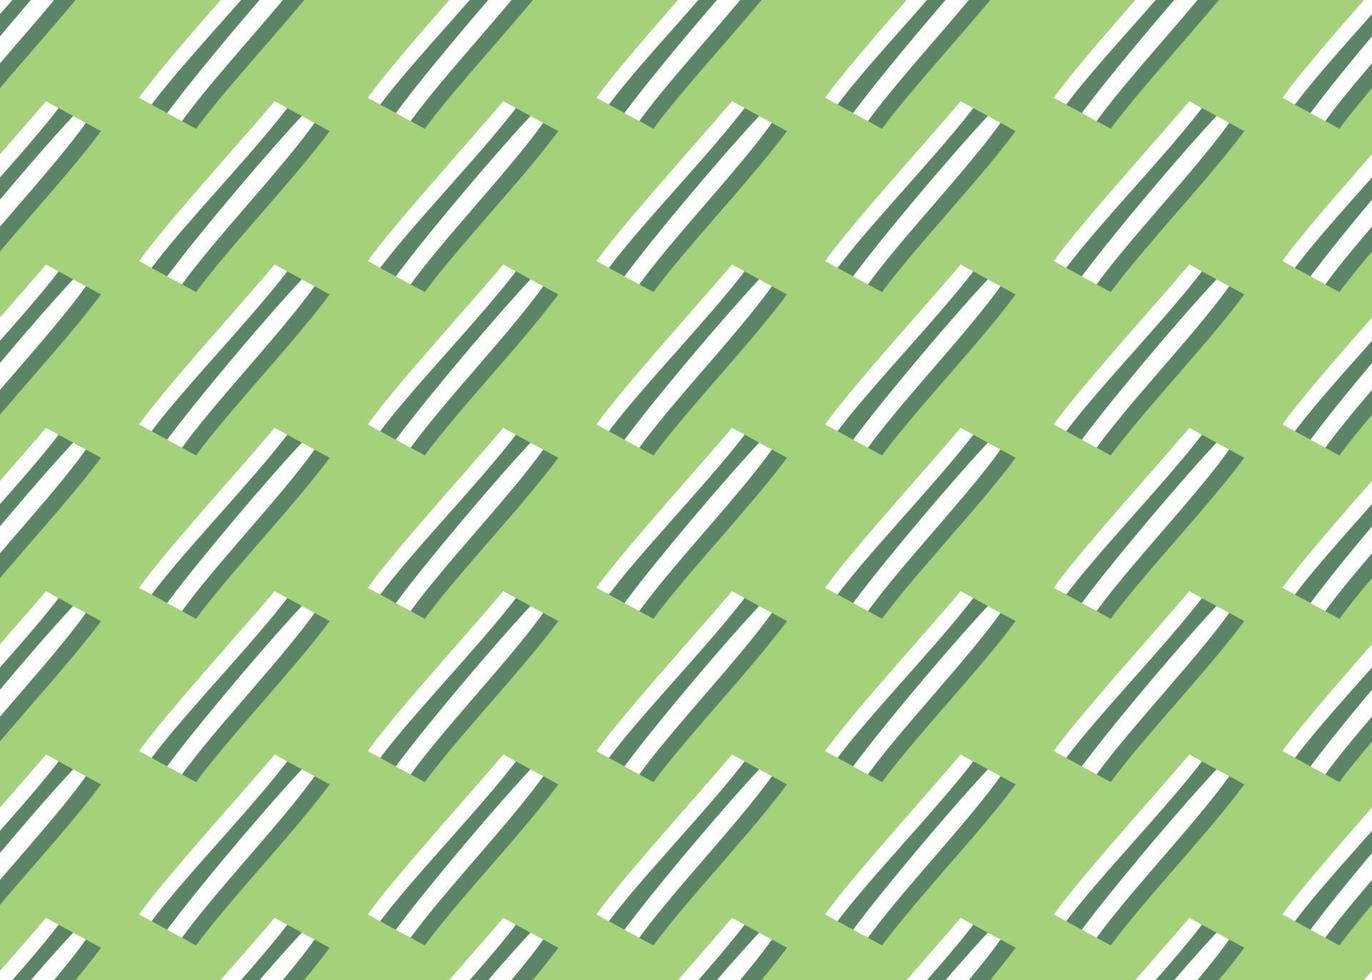 Vektor Textur Hintergrund, nahtloses Muster. handgezeichnete, grüne, weiße Farben.